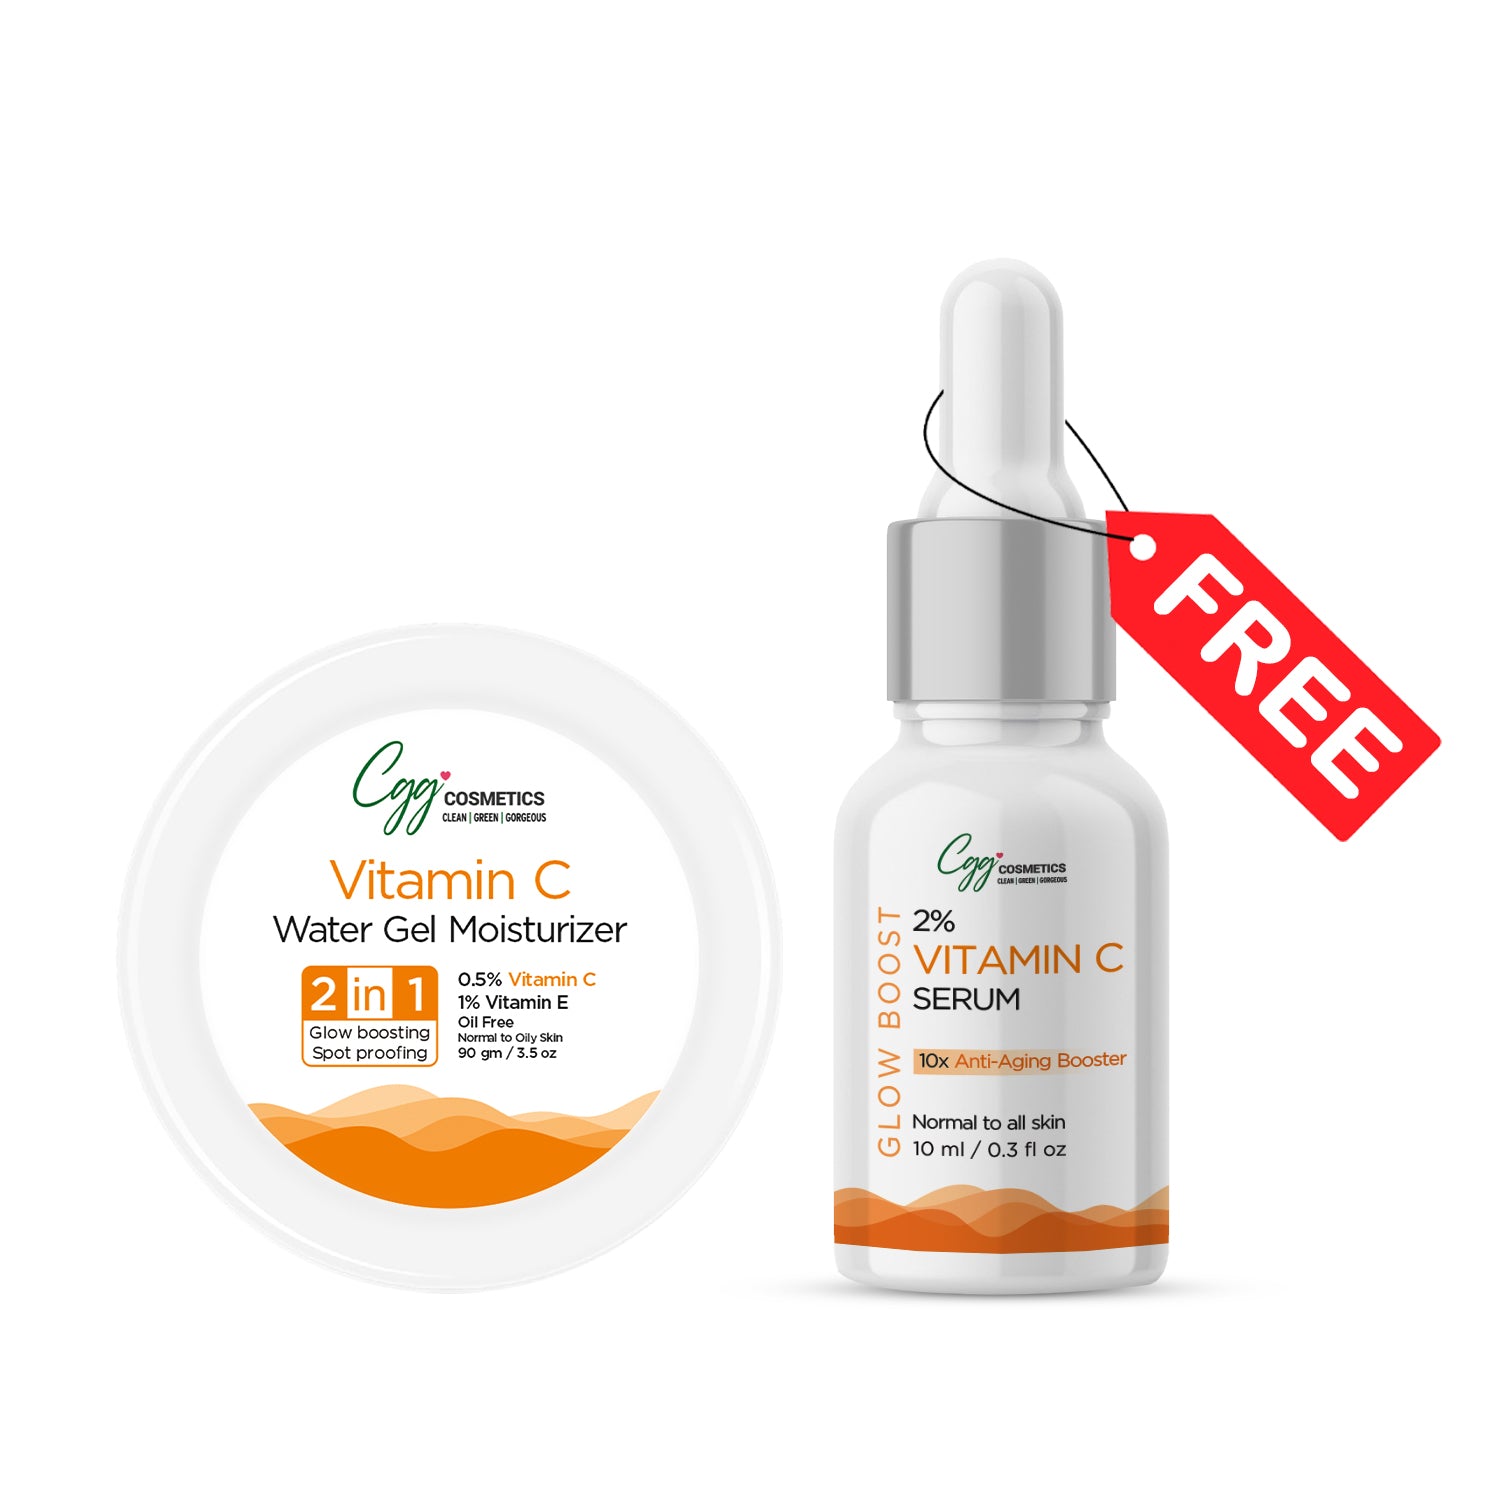 CGG Cosmetics Vitamin C Water Gel Moisturizer 90gm + FREE 10ml Sample of 2% Vitamin C Serum